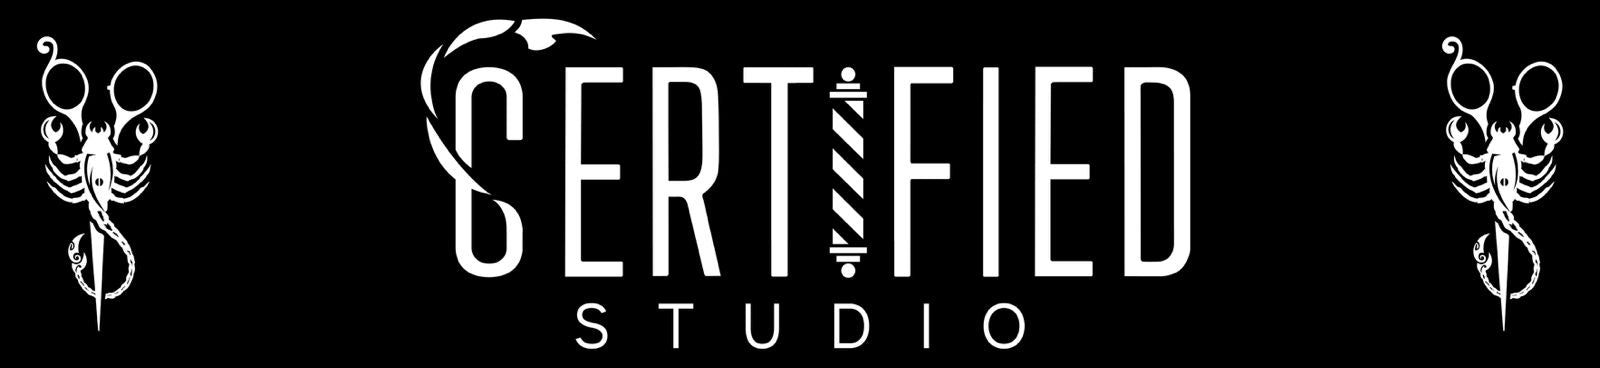 Certified studio